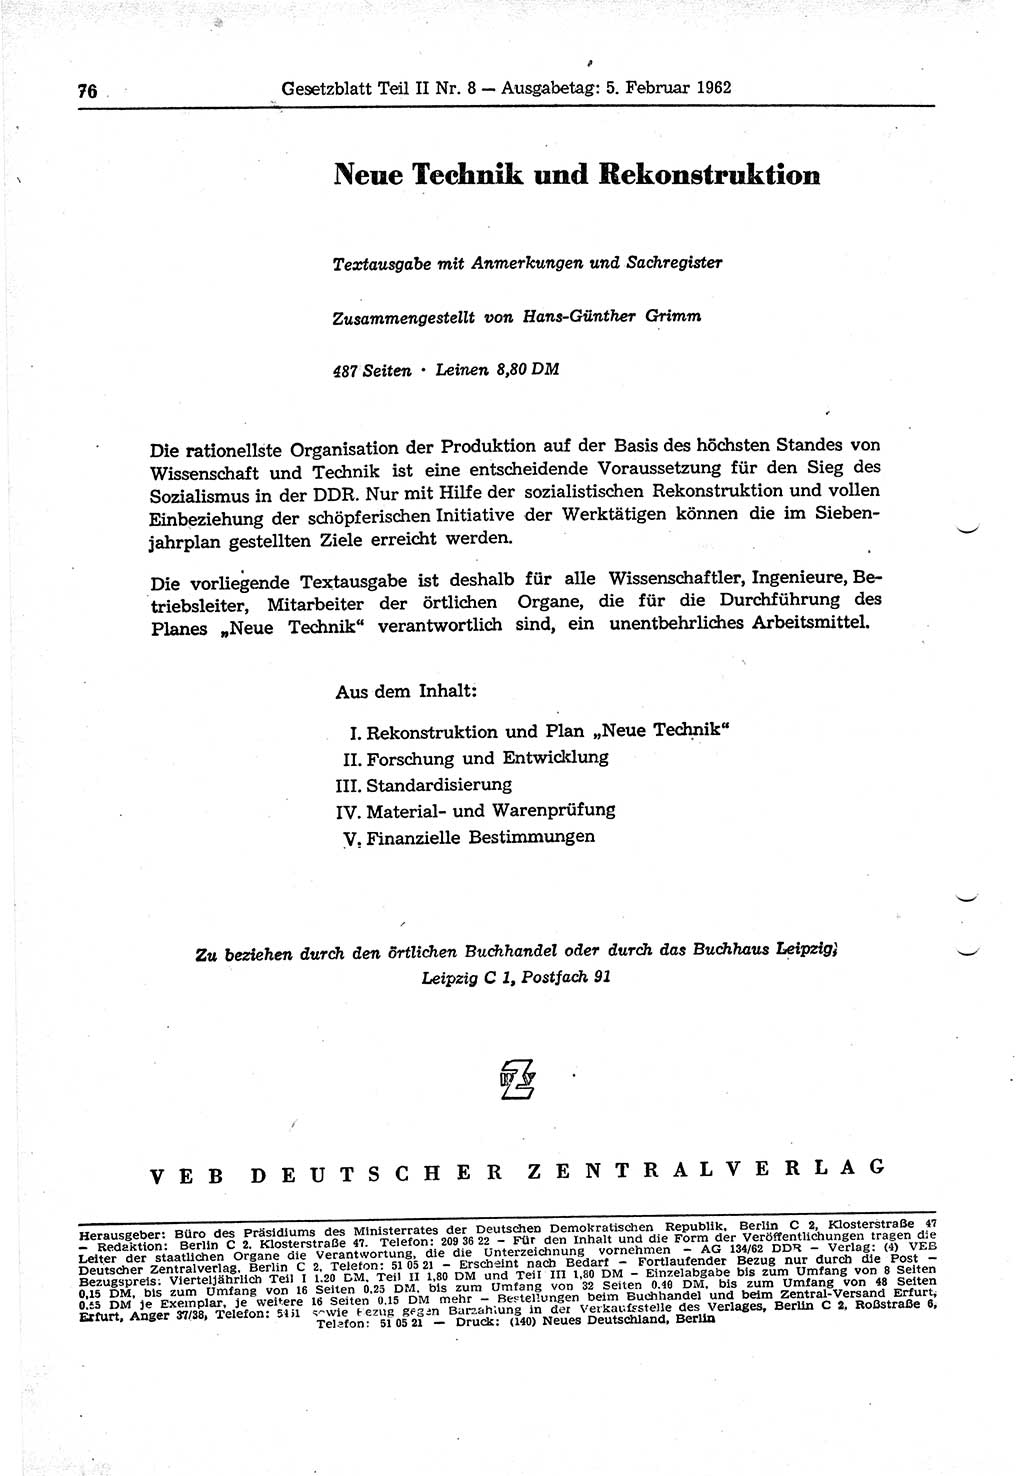 Gesetzblatt (GBl.) der Deutschen Demokratischen Republik (DDR) Teil ⅠⅠ 1962, Seite 76 (GBl. DDR ⅠⅠ 1962, S. 76)